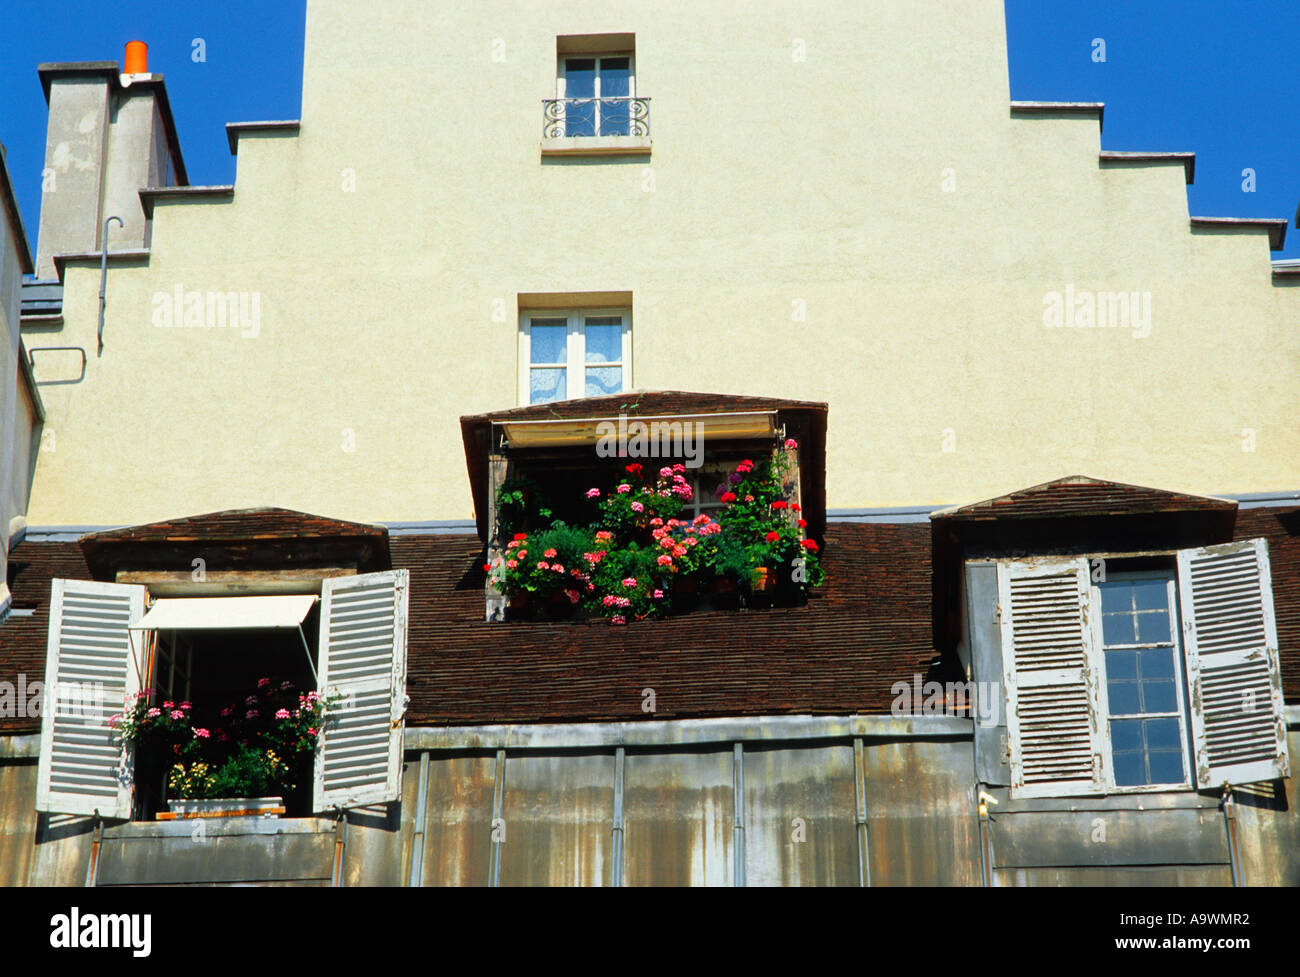 Pariser Architektur: Treppendach oder Dach eines weißen Hauses. Niederländischer Einfluss. Offene Fensterläden und eine Fensterbox mit roten und rosa Blumen. Stockfoto